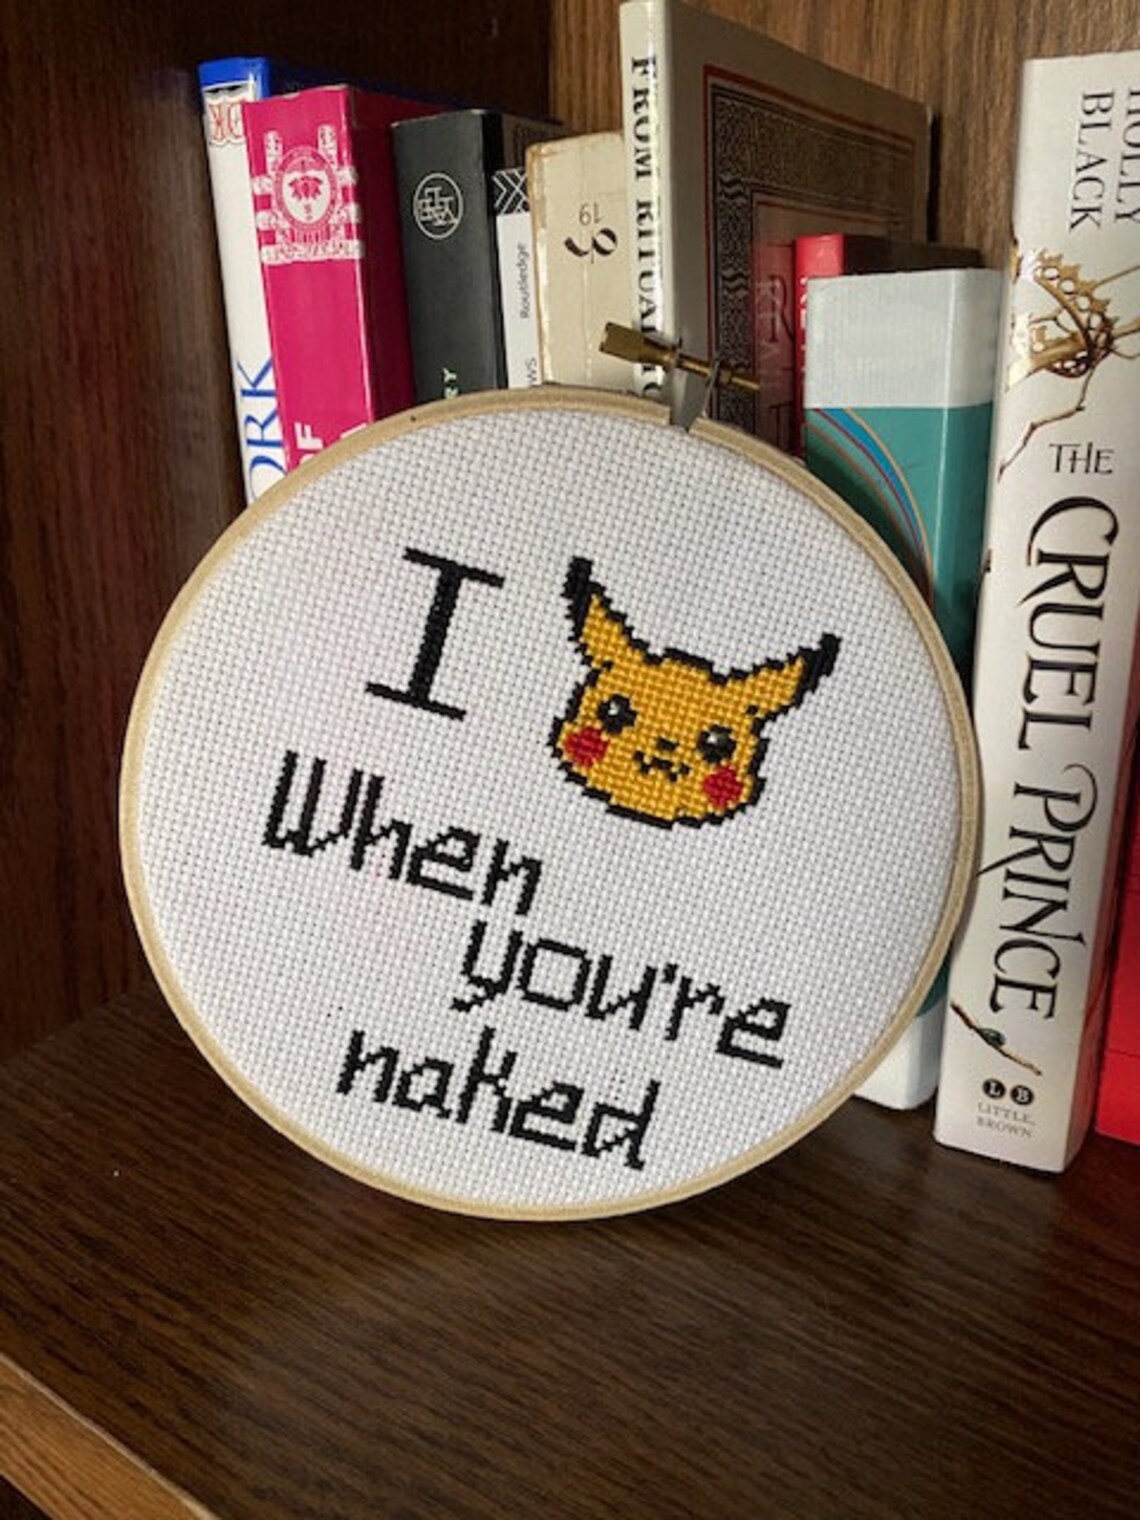 I pikachu when youre naked - Alohomora - Skreened T 